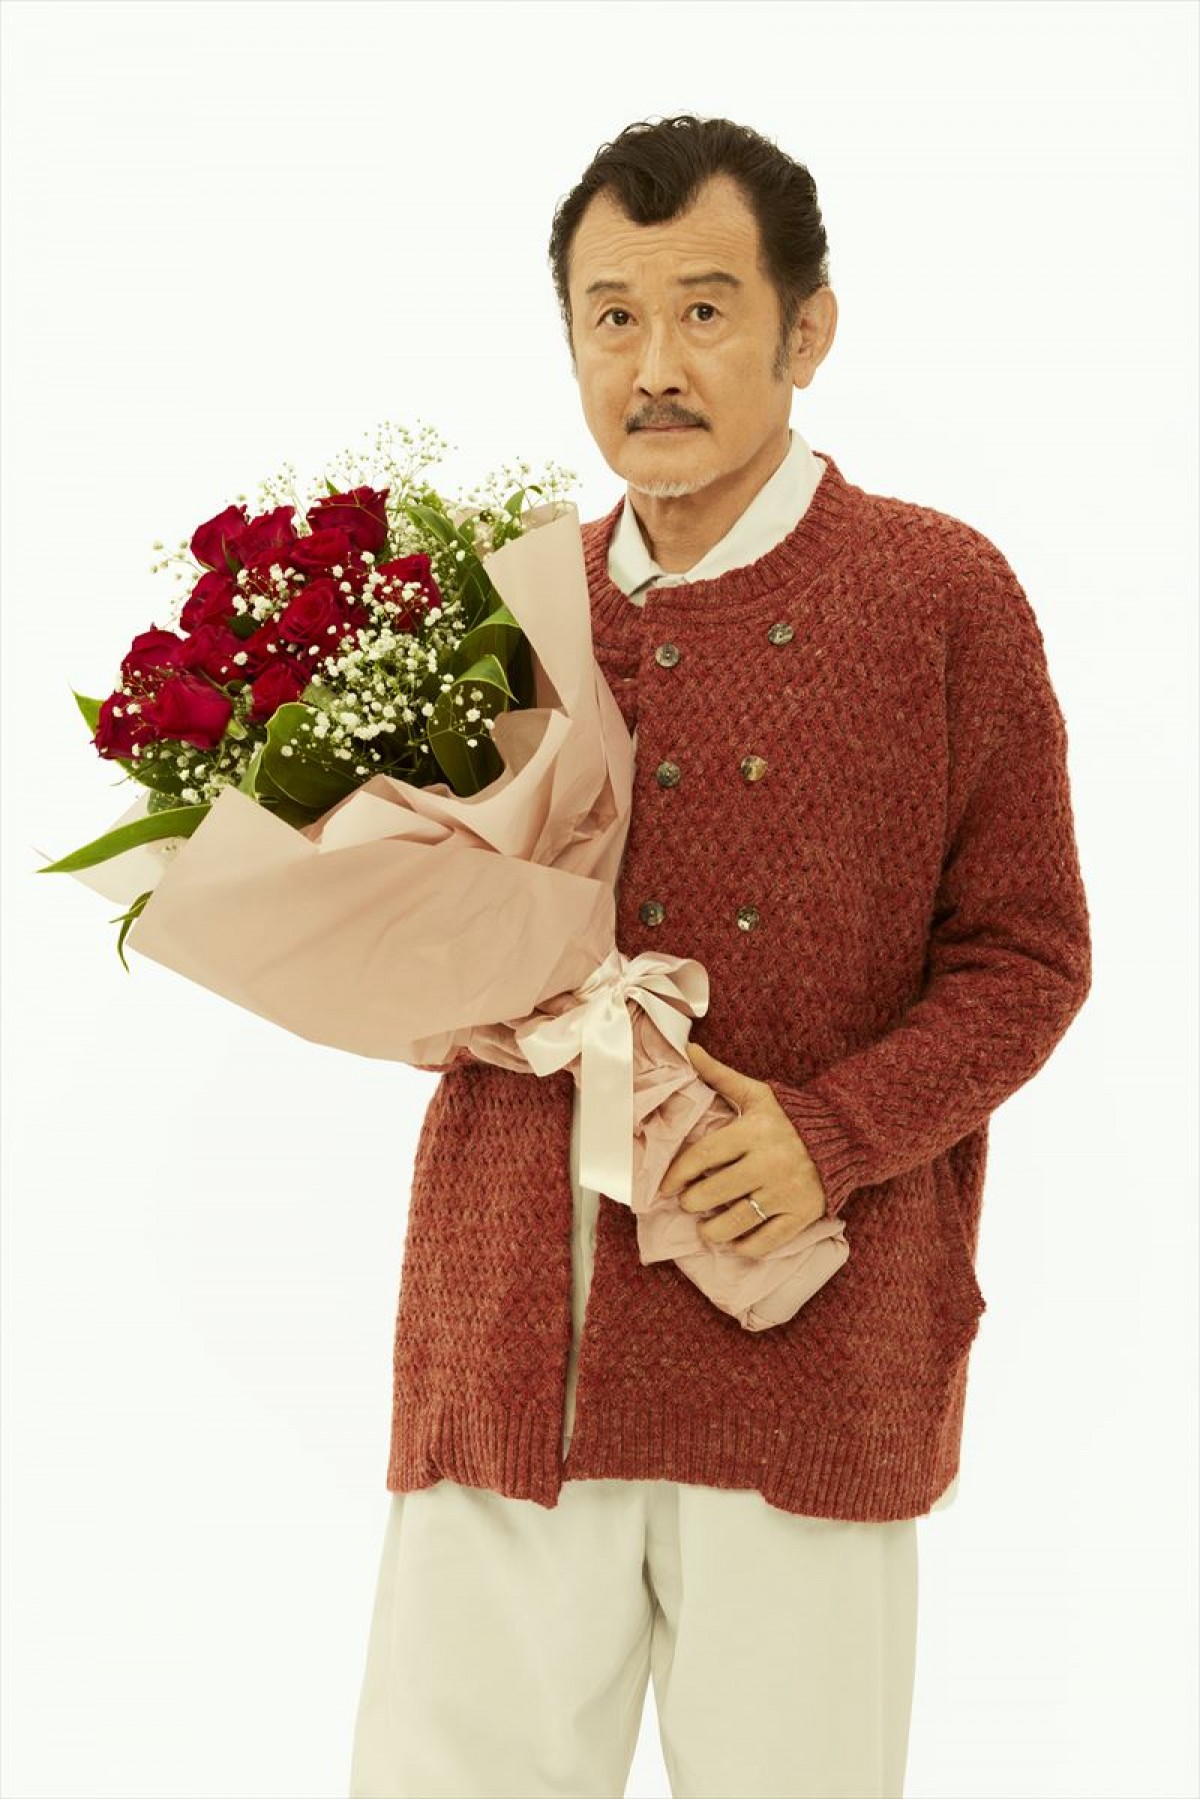 吉田鋼太郎、3人娘の幸せを願って奮闘する父親に　『おいハンサム!!』来年1月スタート